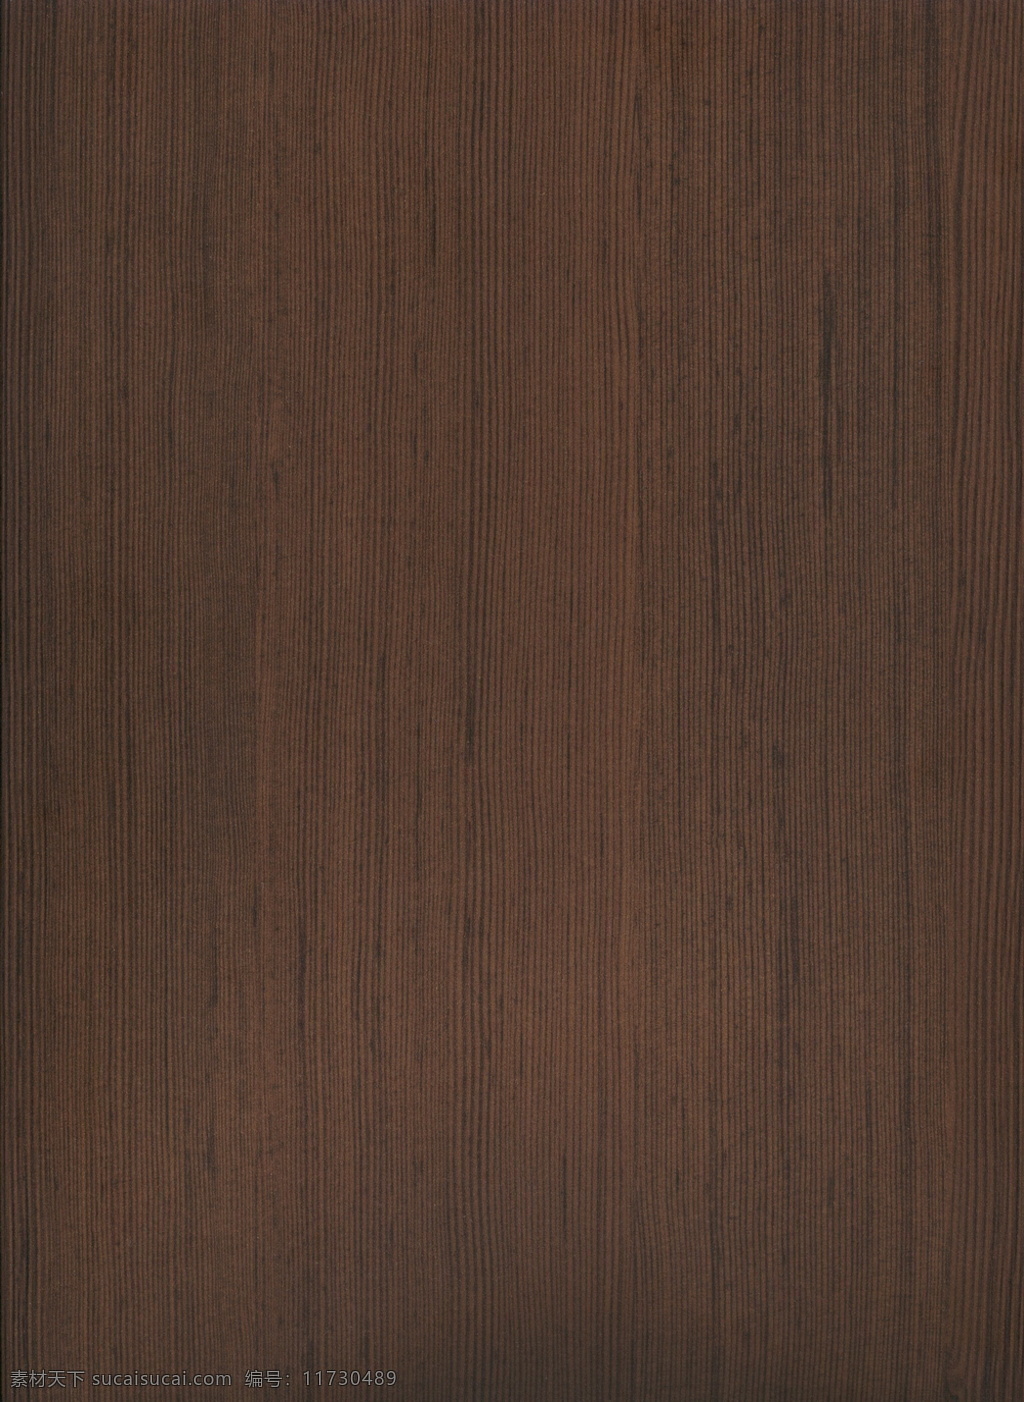 木材 木纹 效果图 3d 模型 3d材质 3d素材 木纹素材 木纹效果图 木材木纹 3d模型素材 材质贴图